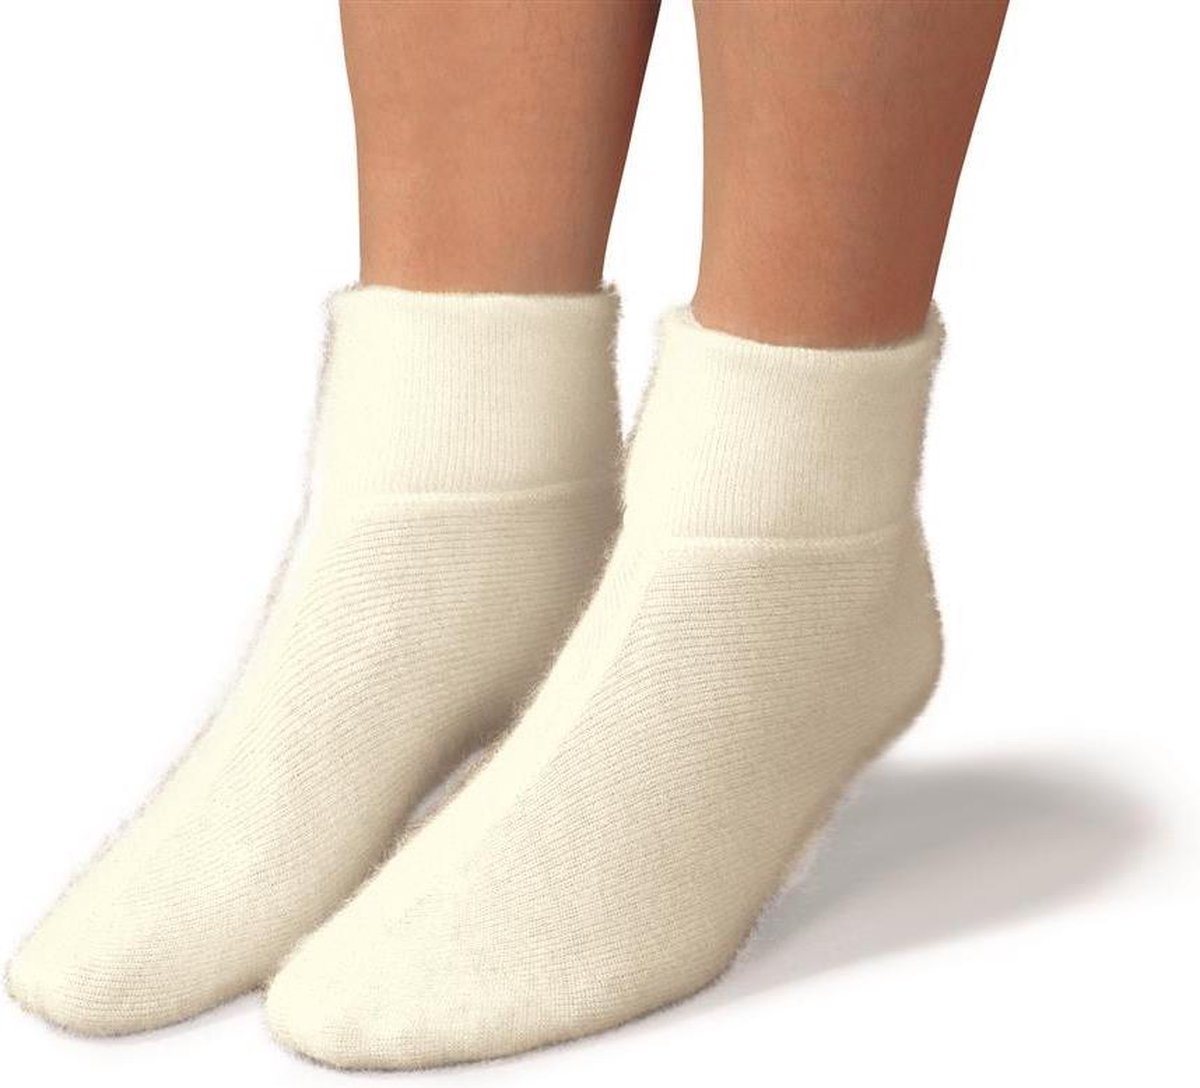 Bedsokken - Warmte sokken Maat S Wit